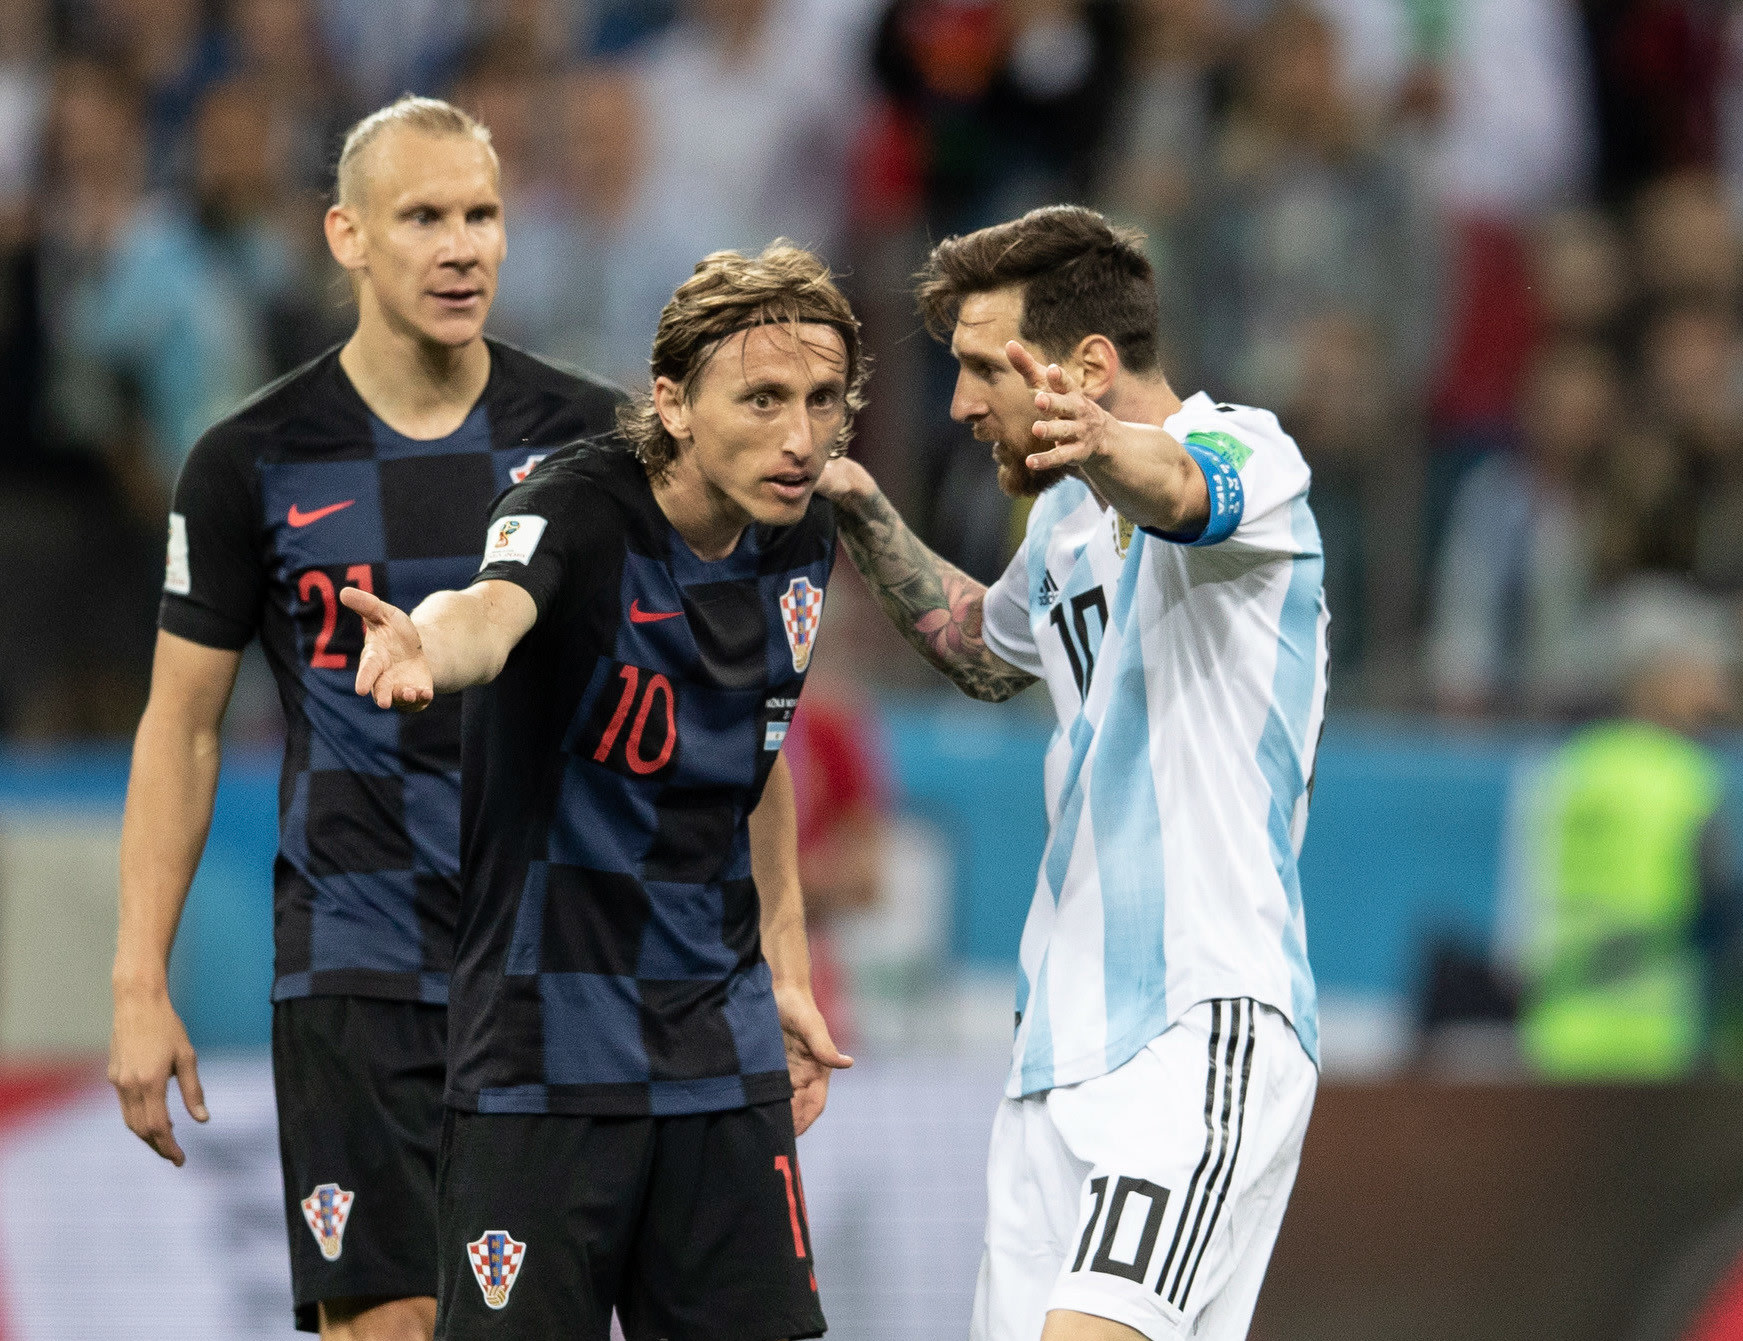 מונדיאל 2018: ליאונל מסי, נבחרת ארגנטינה, עם לוקה מודריץ', נבחרת קרואטיה